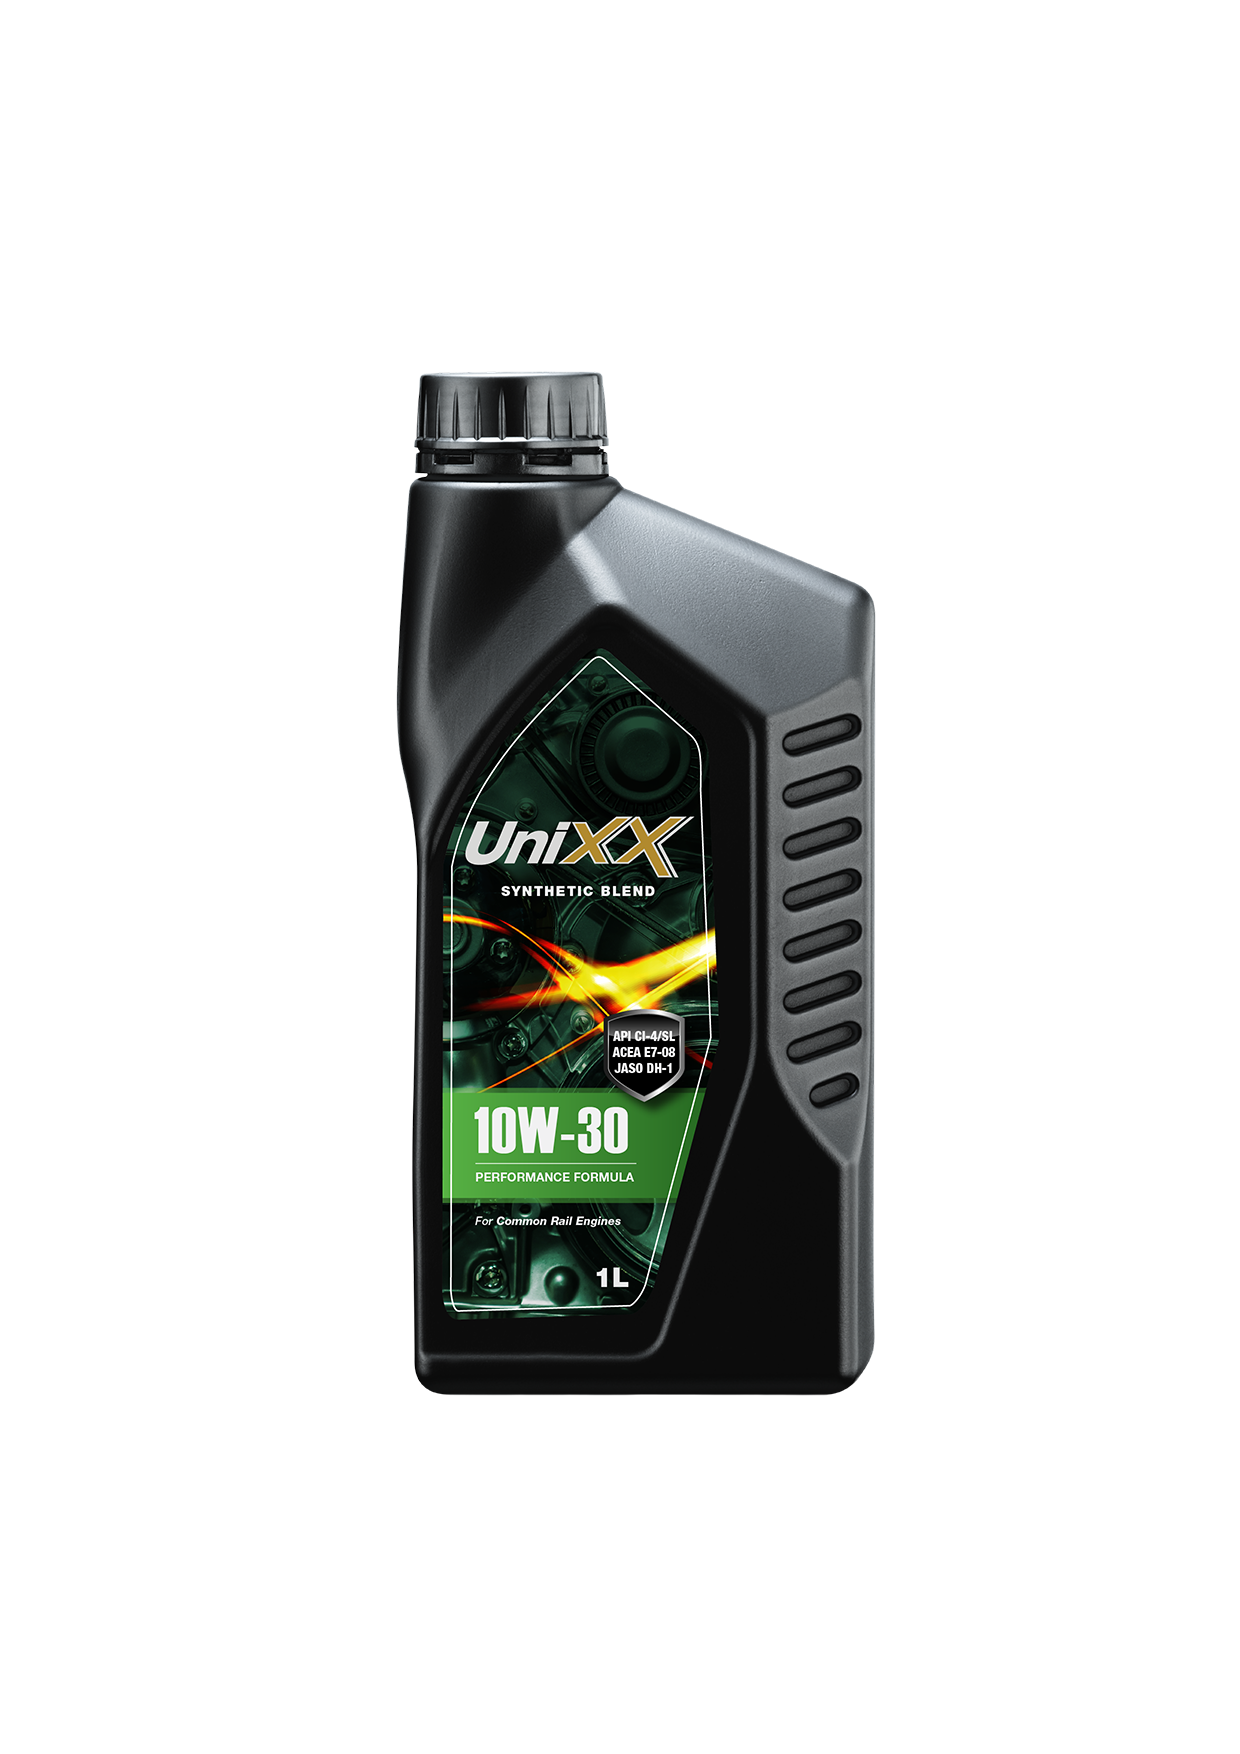 UniXX 10W-30 น้ำมันเครื่องกึ่งสังเคราะห์มาตรฐาน สูตรพรีเมี่ยม ขนาด 1 ลิตร